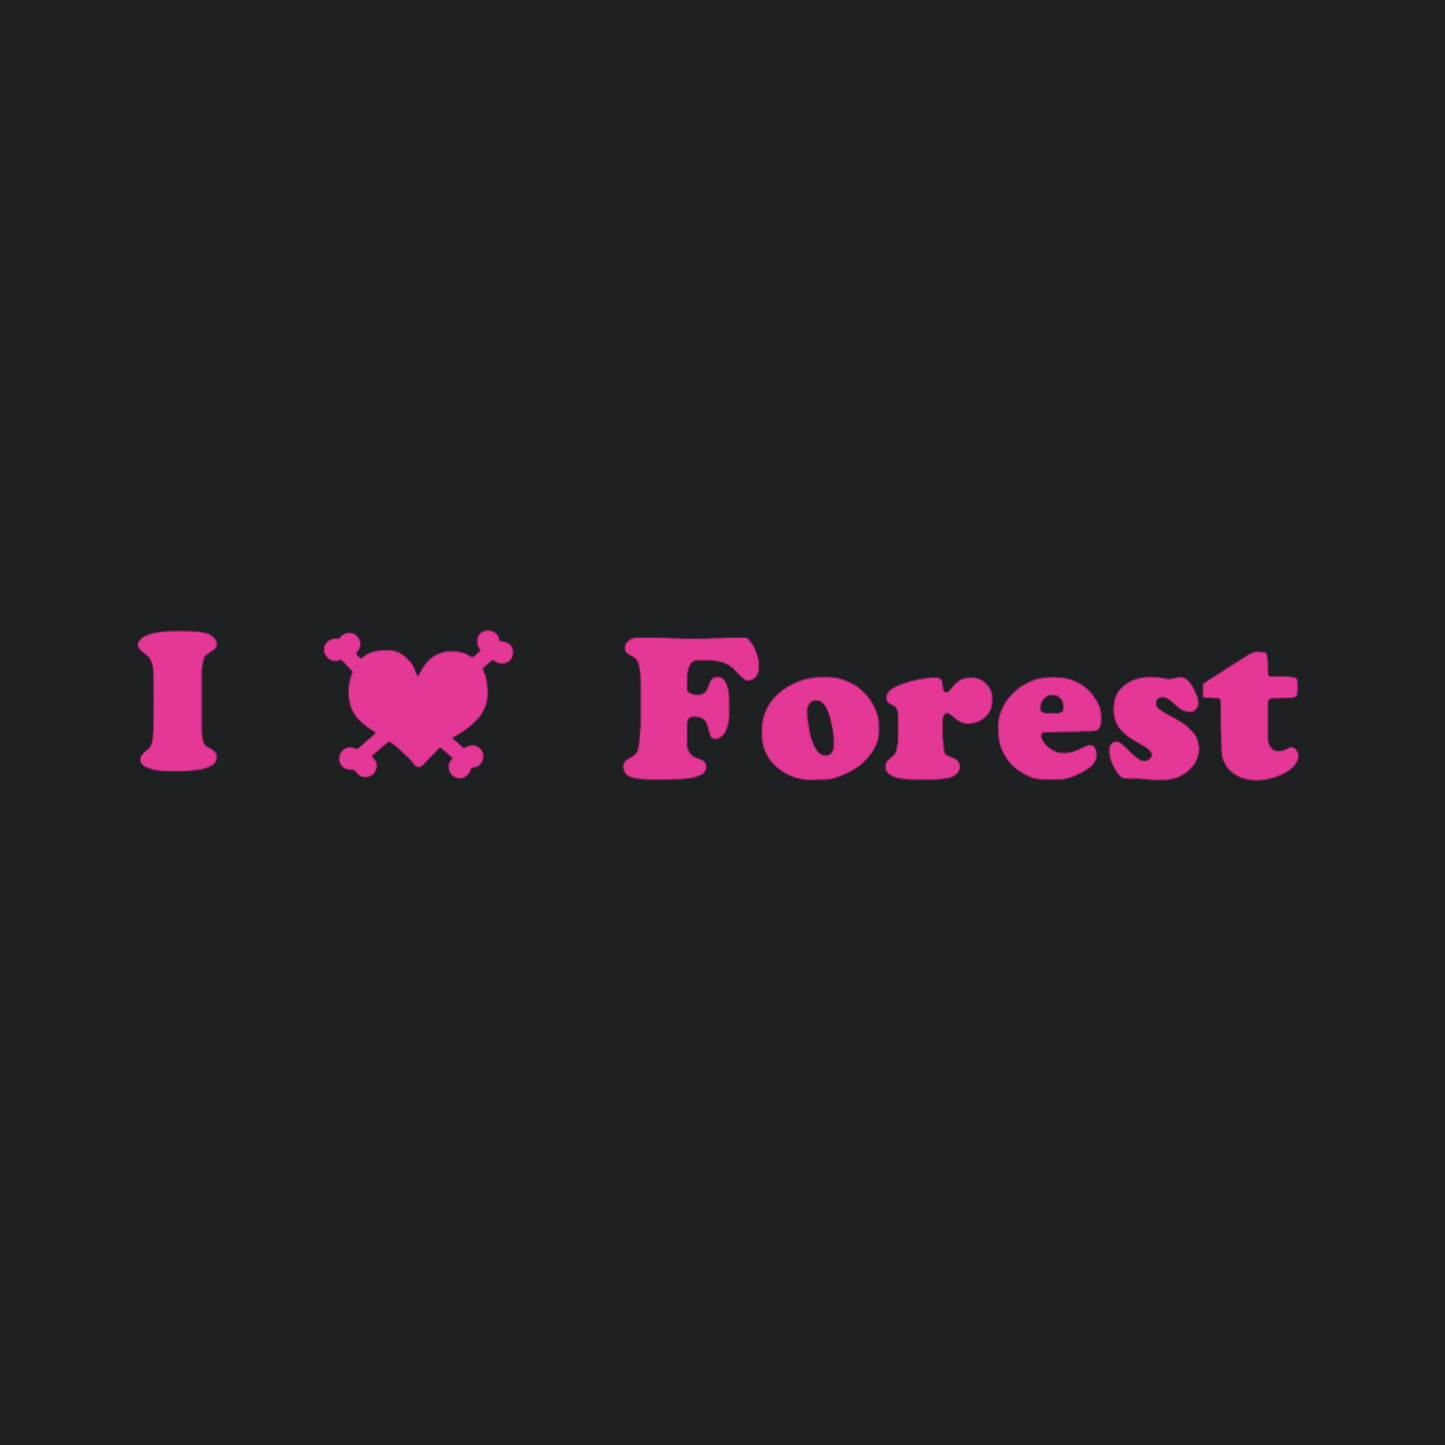 I <3 Forest Bracelet